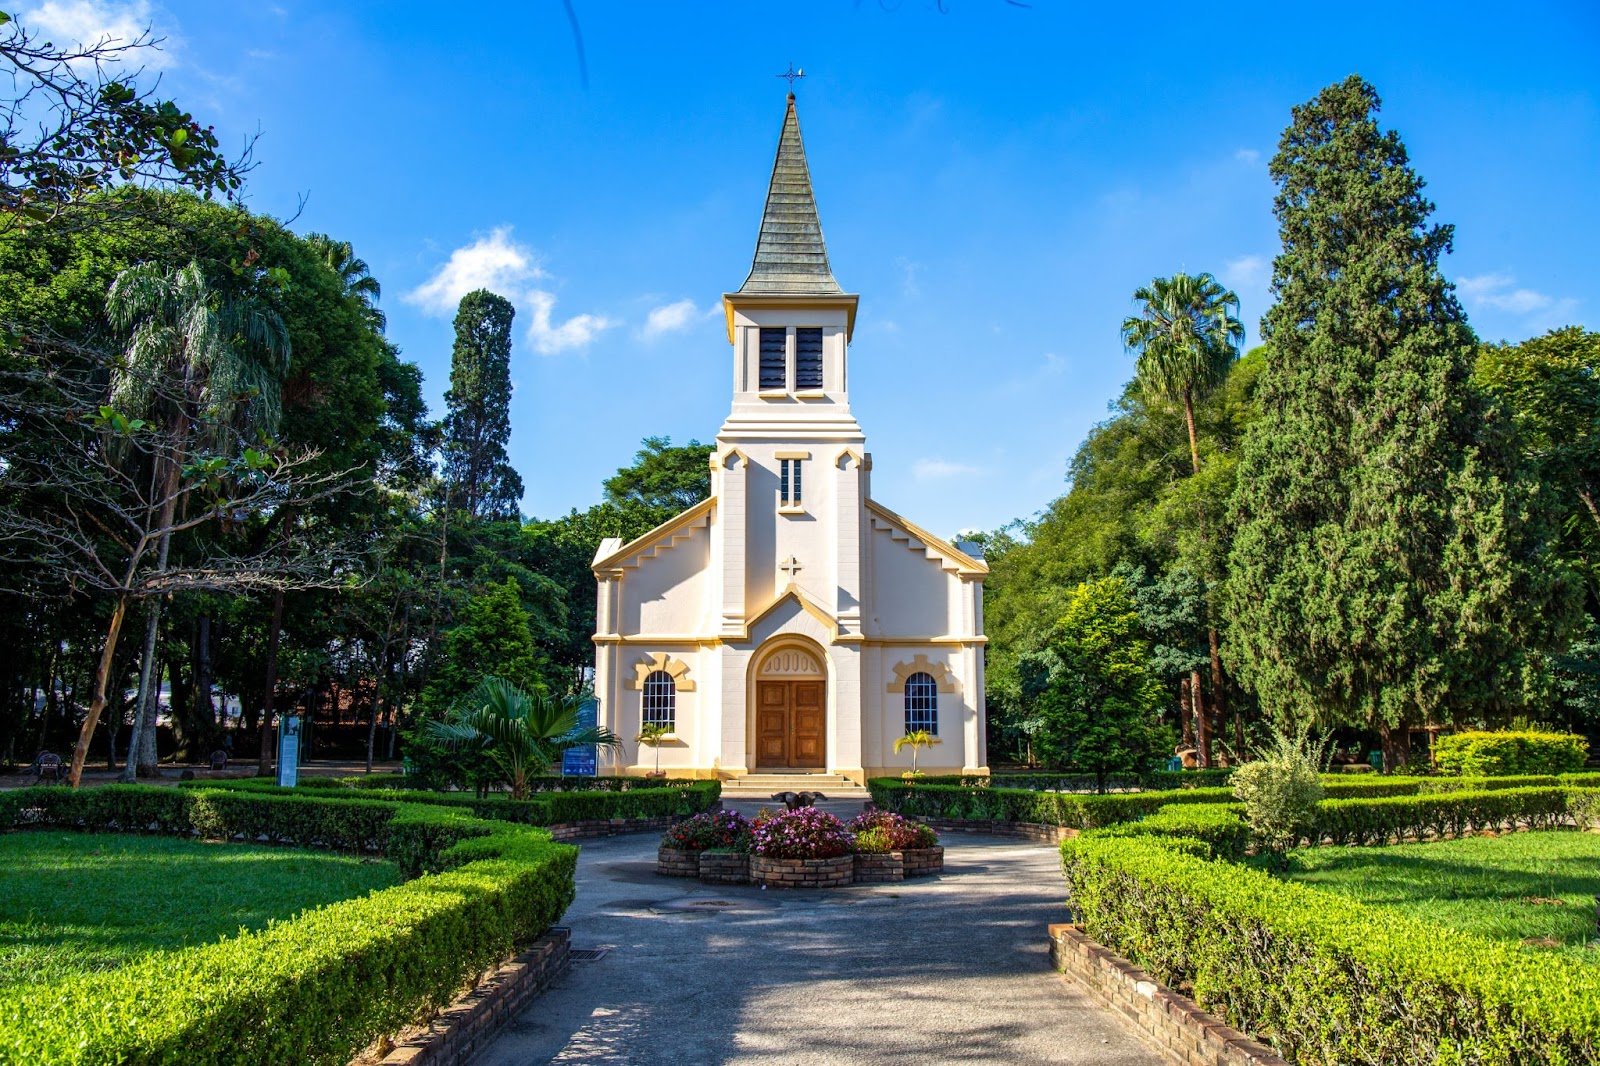 Pequena capela branca com detalhes em amarelo e porta de madeira em estilo colonial, em frente ao jardim do Parque Vicentina Aranha.